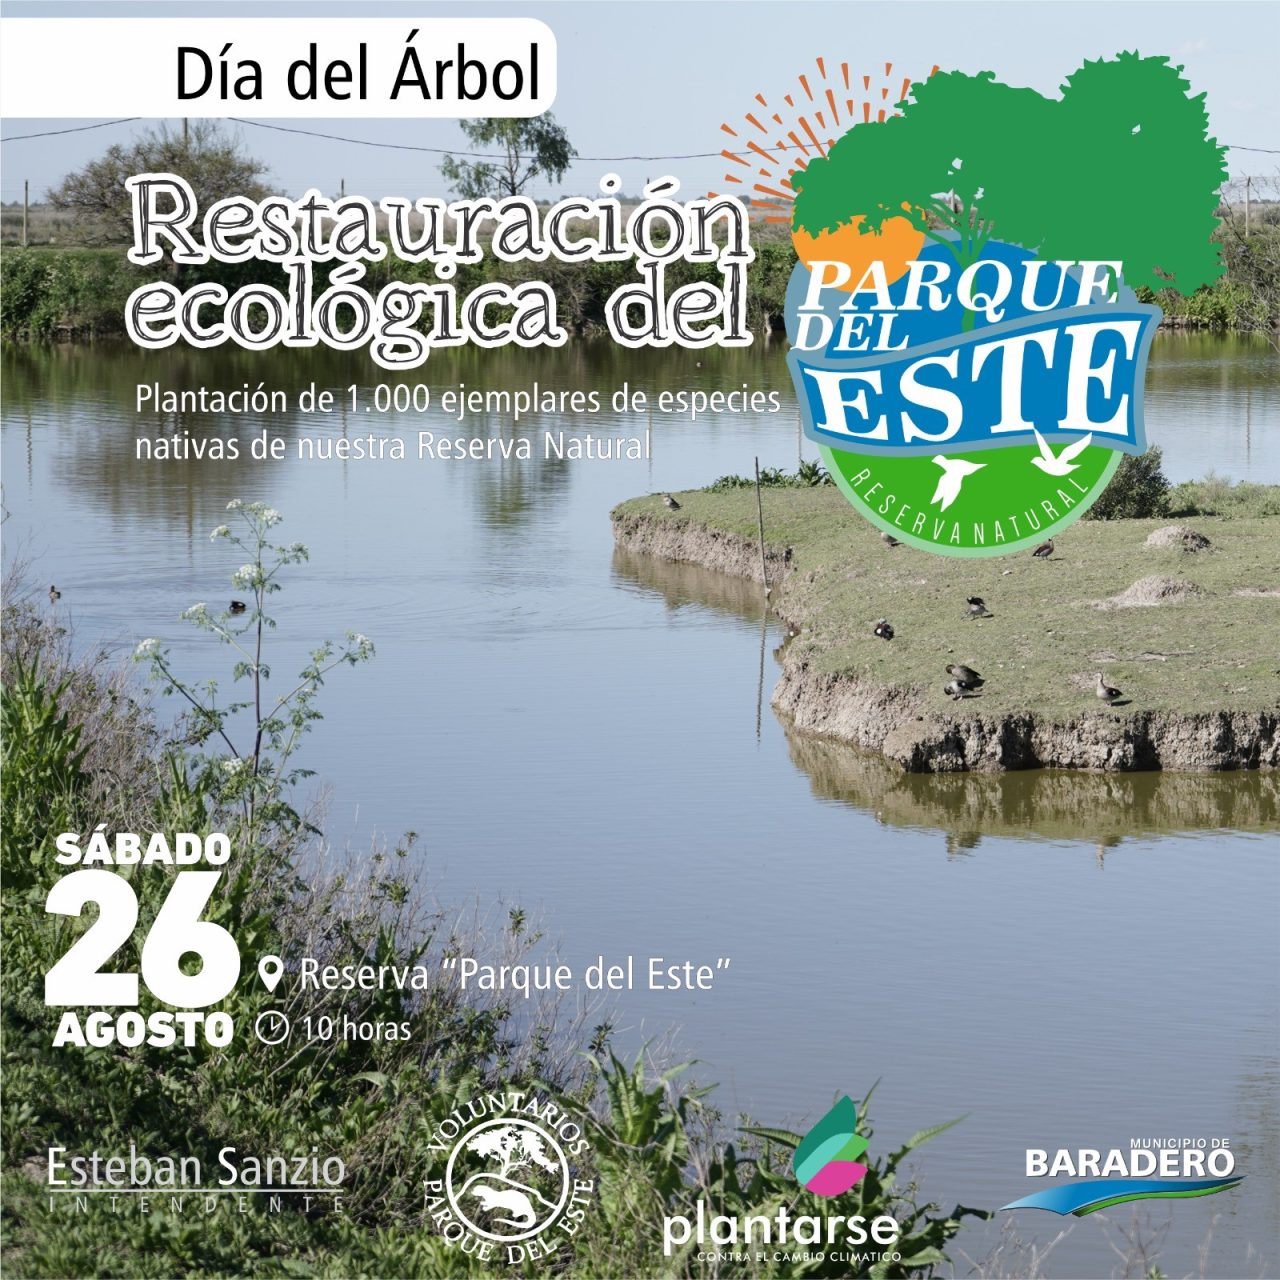 Dia-del-Arbol-Restauracion-ecologica-de-la-Reserva-Paruqe-del-Este-1280x1280.jpeg